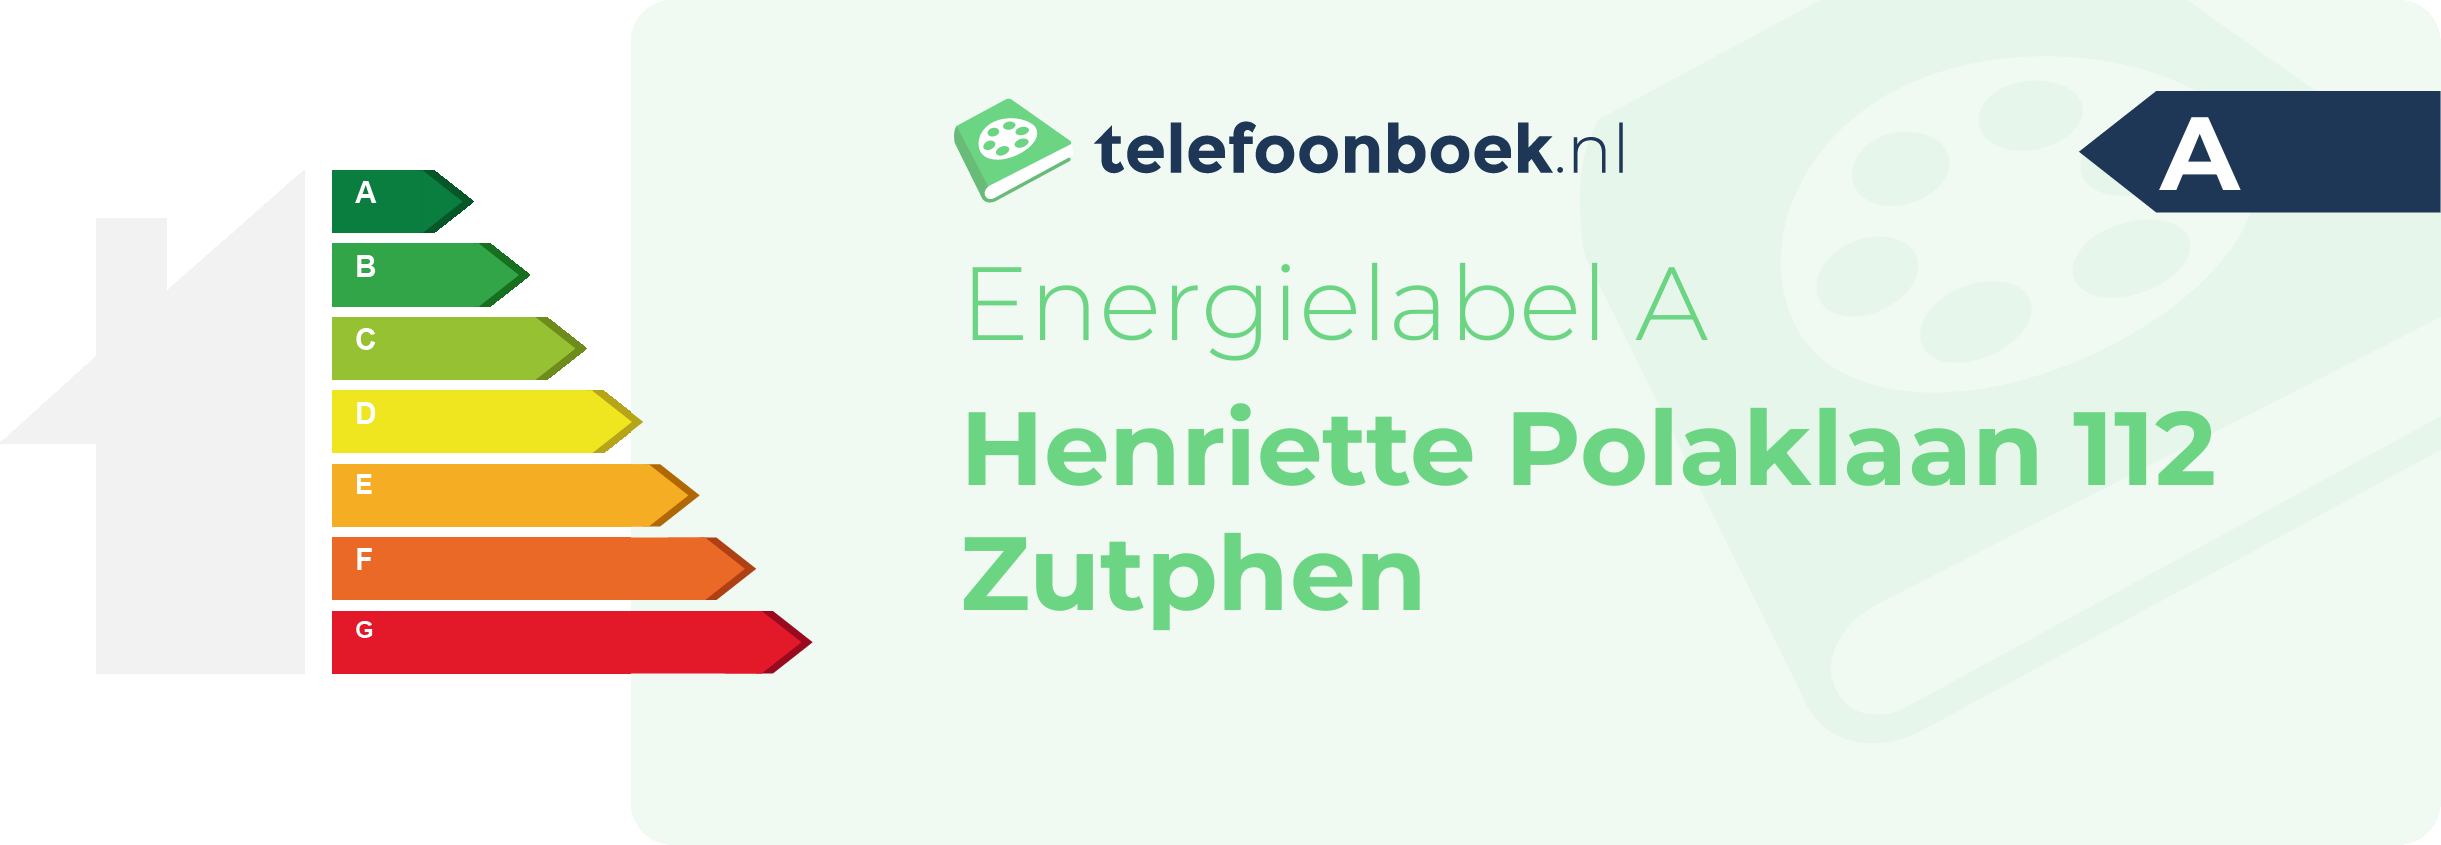 Energielabel Henriette Polaklaan 112 Zutphen